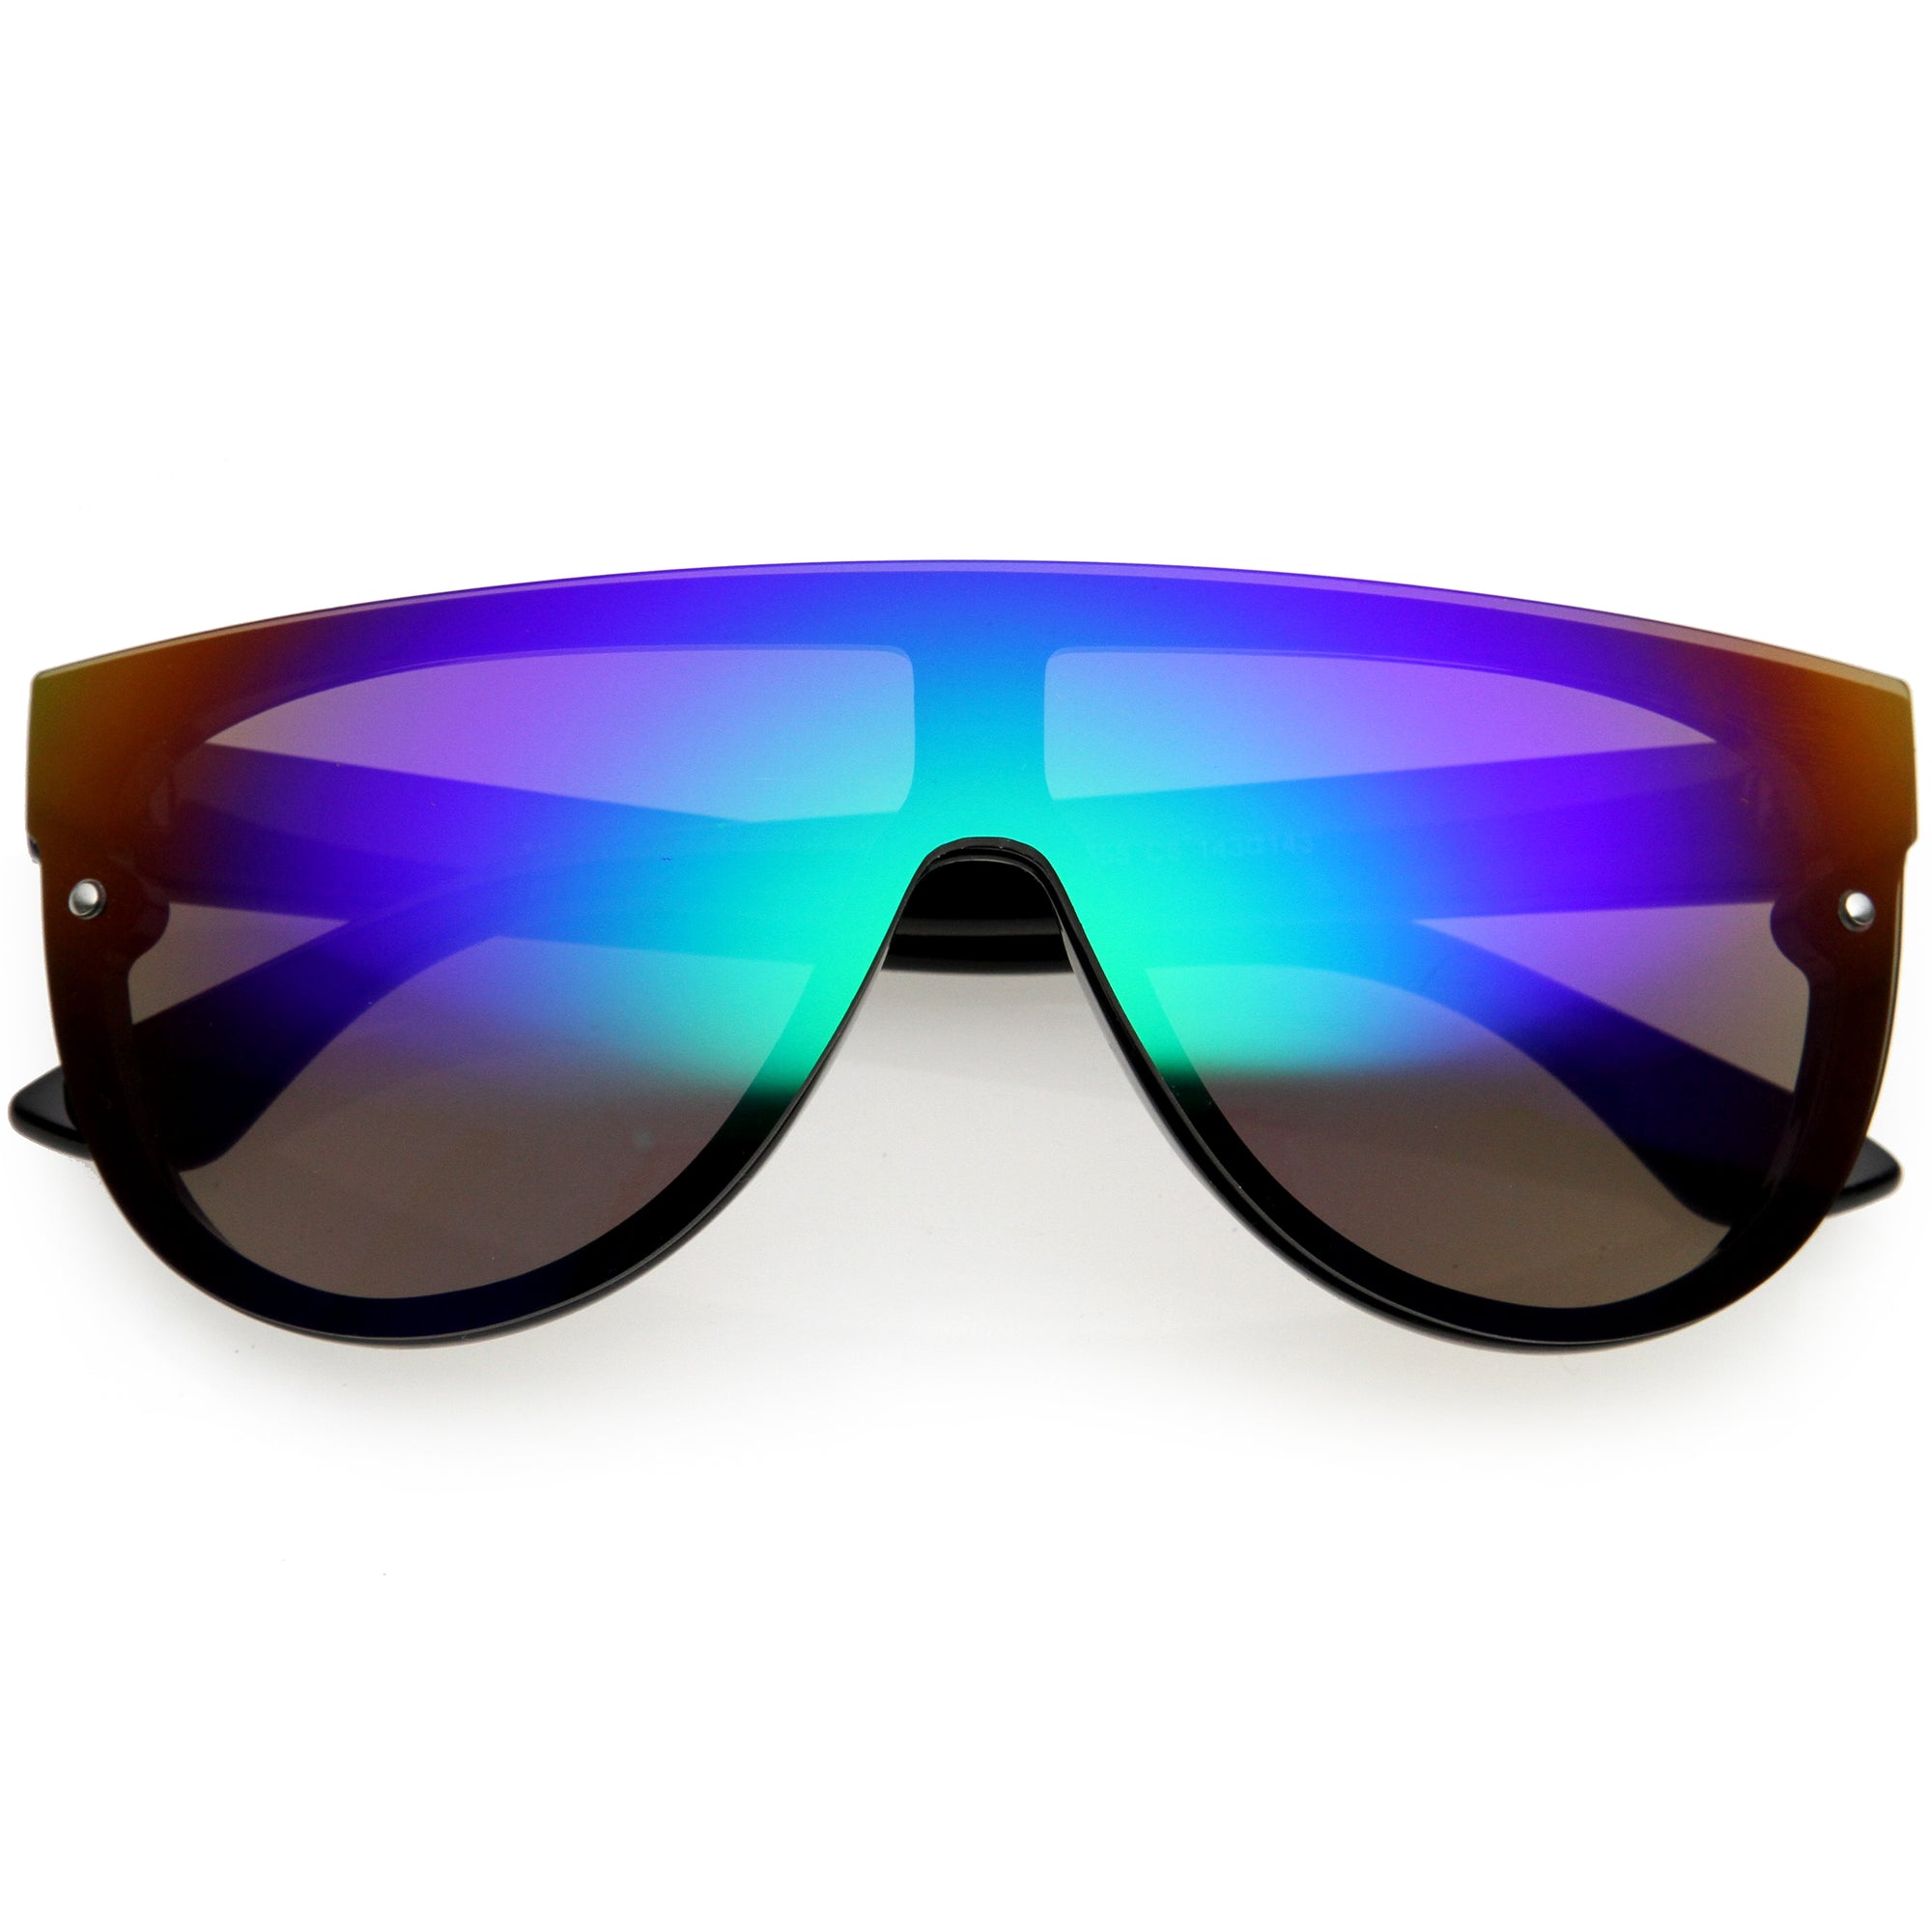 Oversized Sunglasses For Men  Best Prices On Oversized Sunglasses